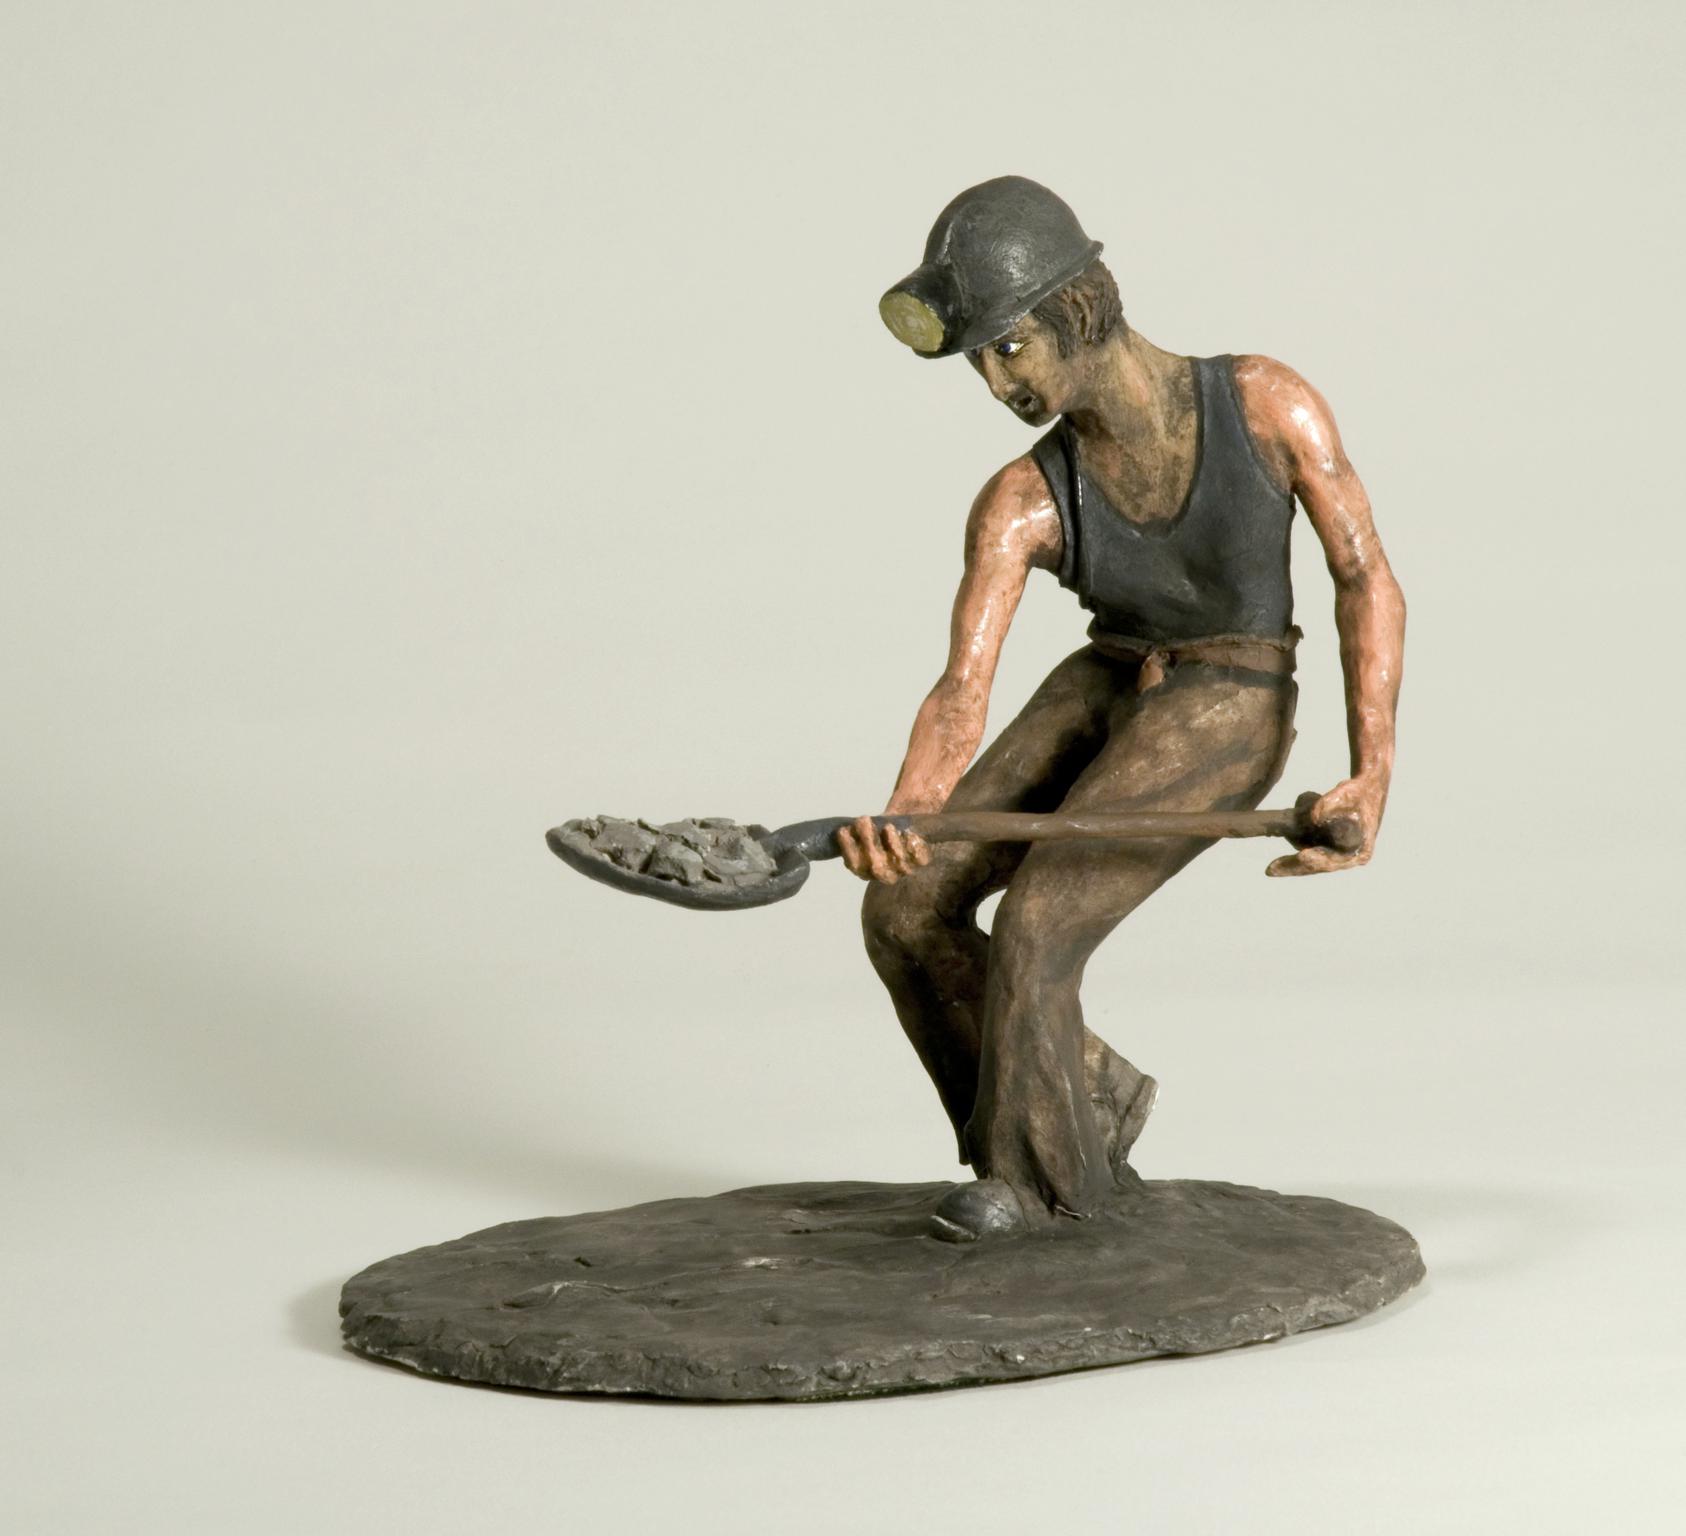 Sculpture of a coal miner